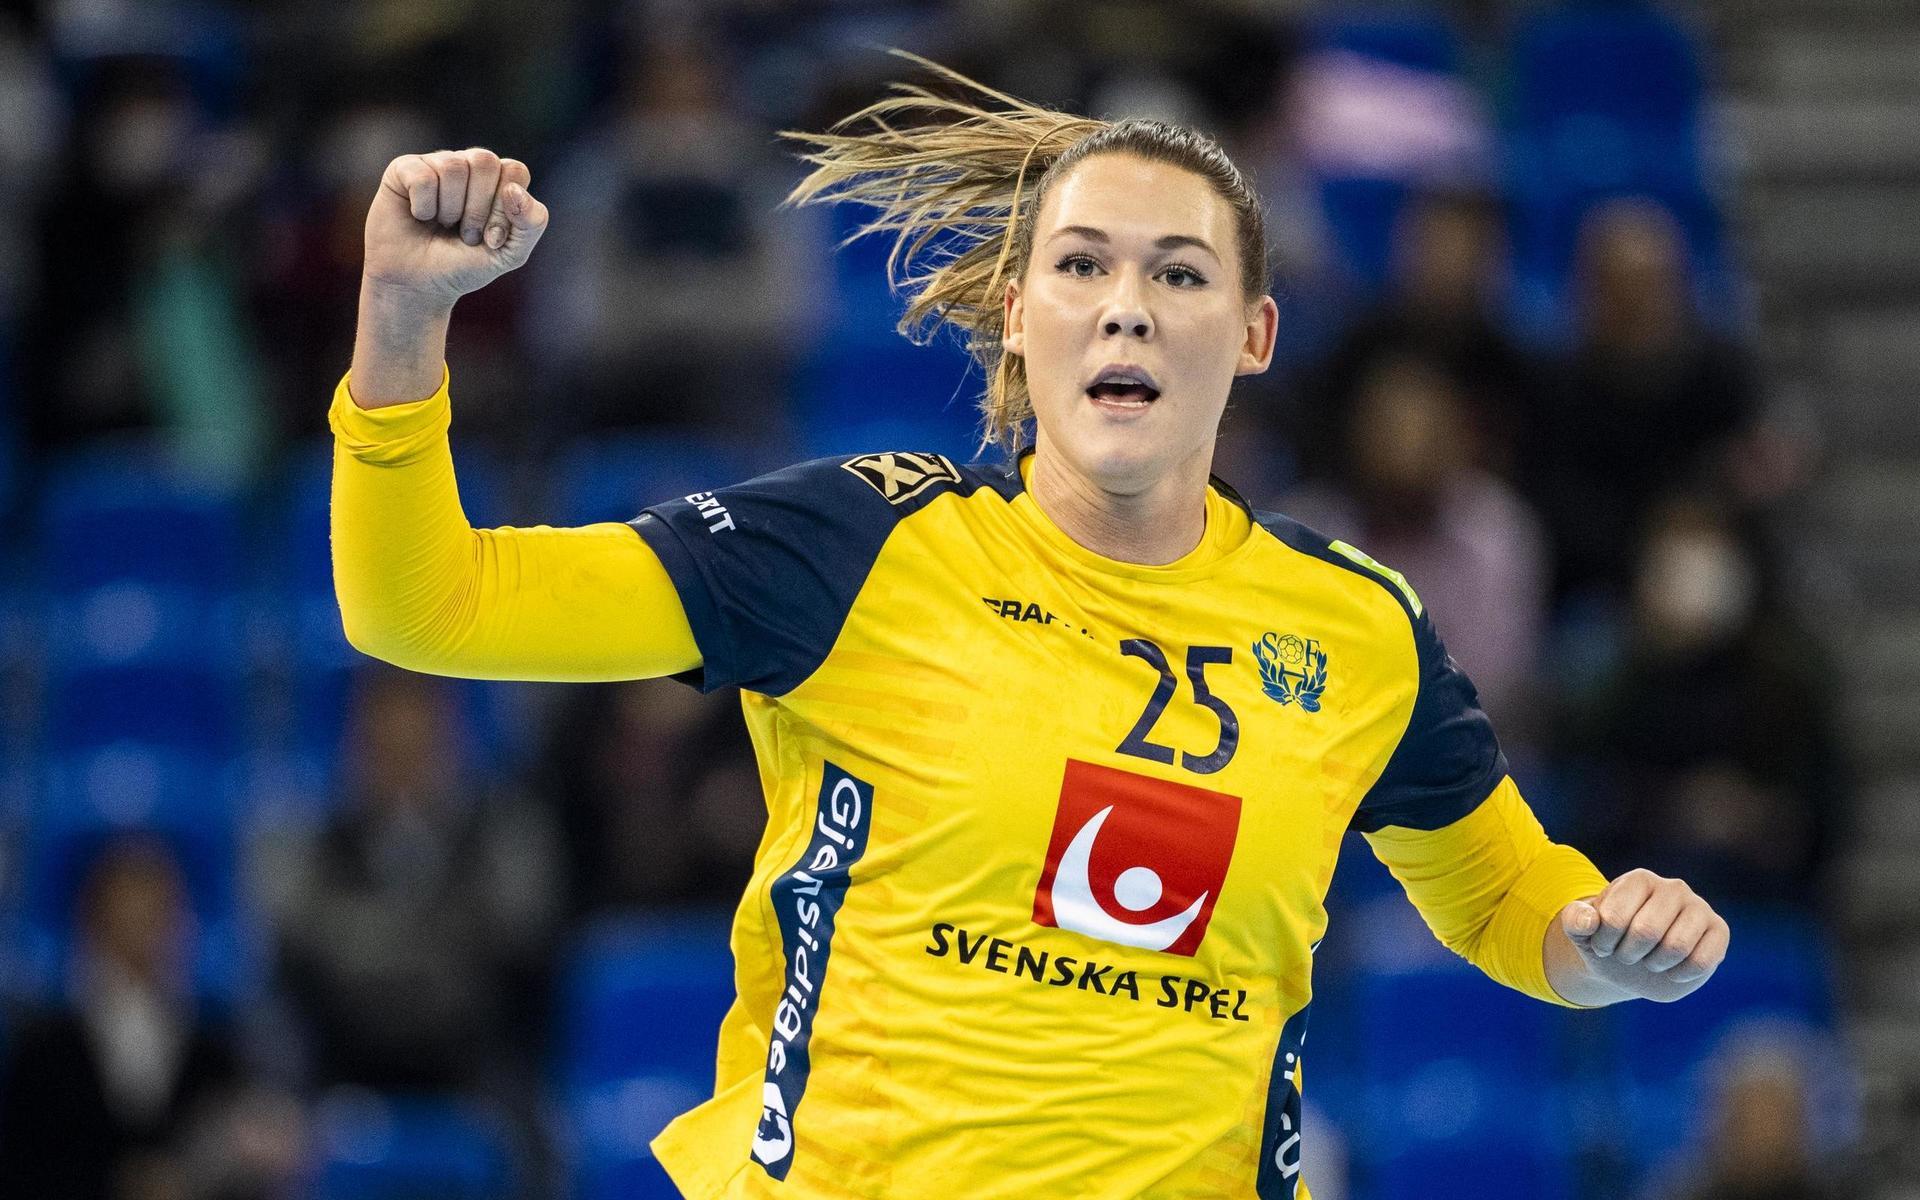 Mikaela Mässing under handbolls-VM i japanska Kumamoto 2019 där storskytten från Mölndal fick sitt internationella genombrott.